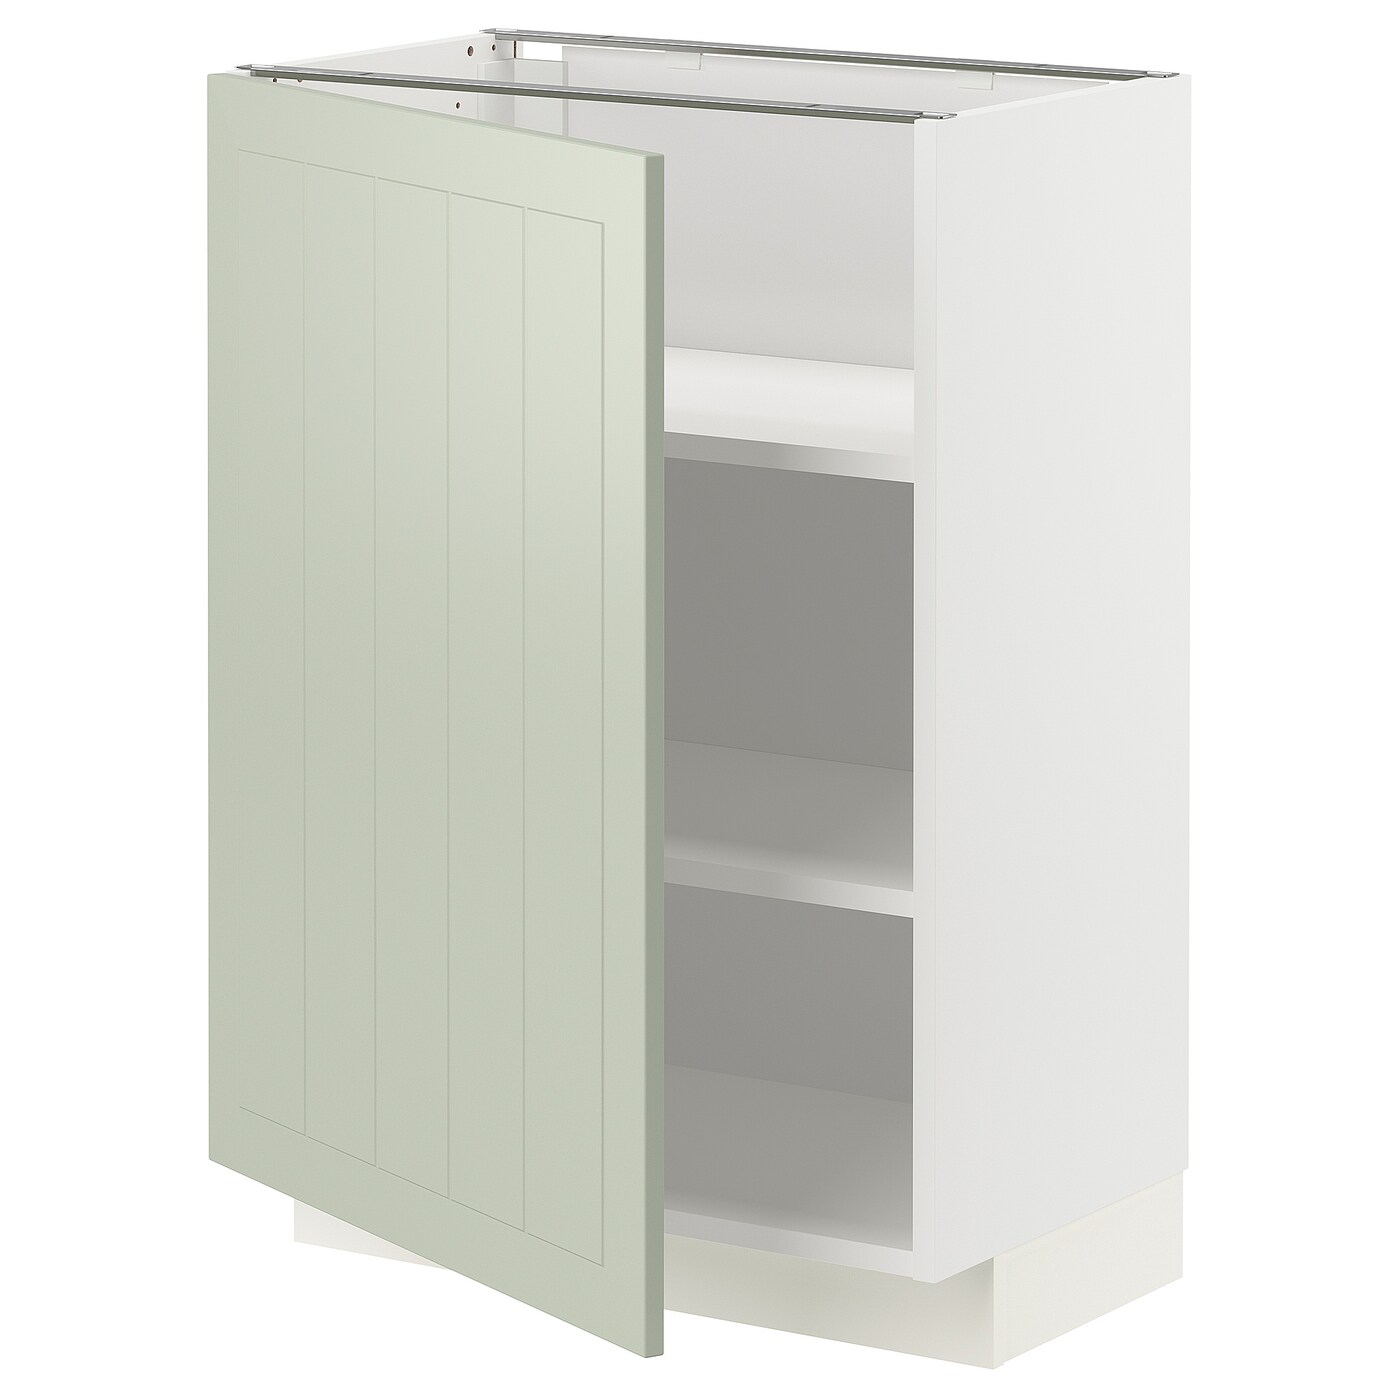 Напольный шкаф - METOD IKEA/ МЕТОД ИКЕА,  88х60 см, белый/зеленый